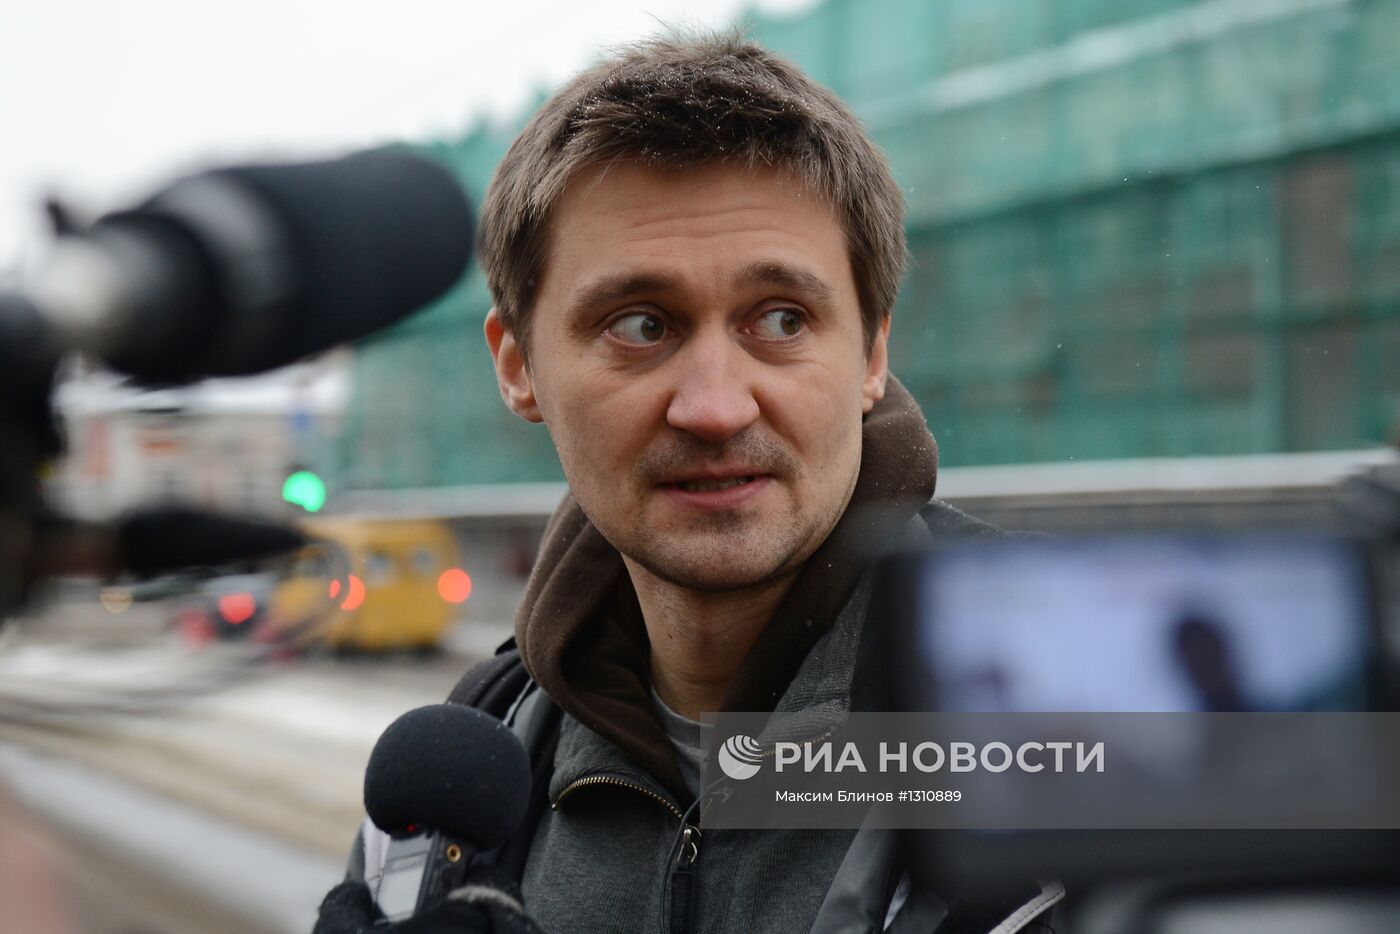 Режиссер П.Костомаров вызван на допрос в Следственный комитет РФ